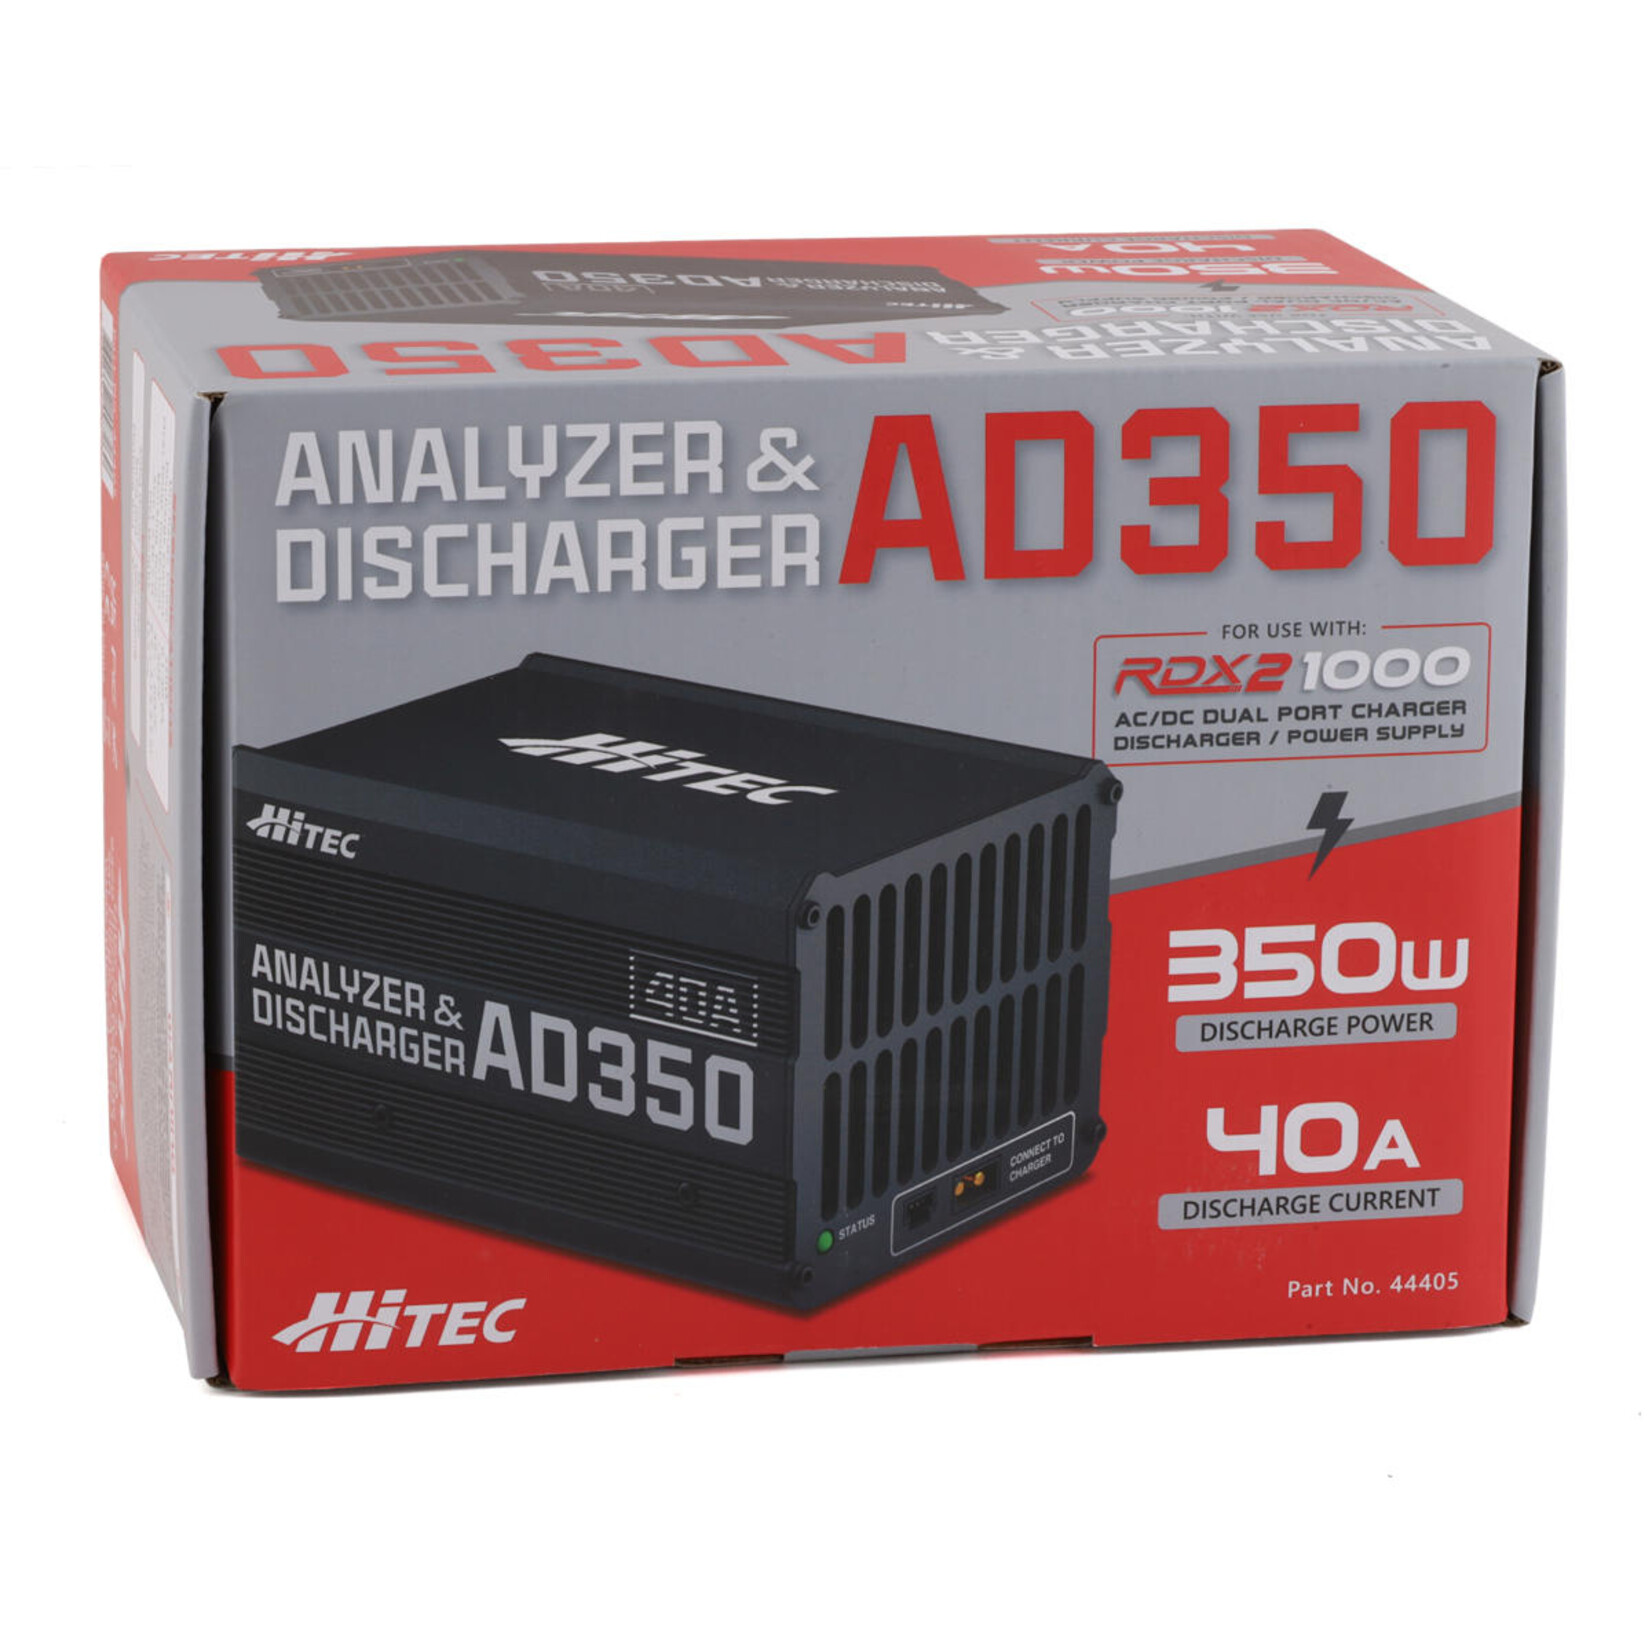 Hitec Hitec AD350 Analyzer & Discharger #44405